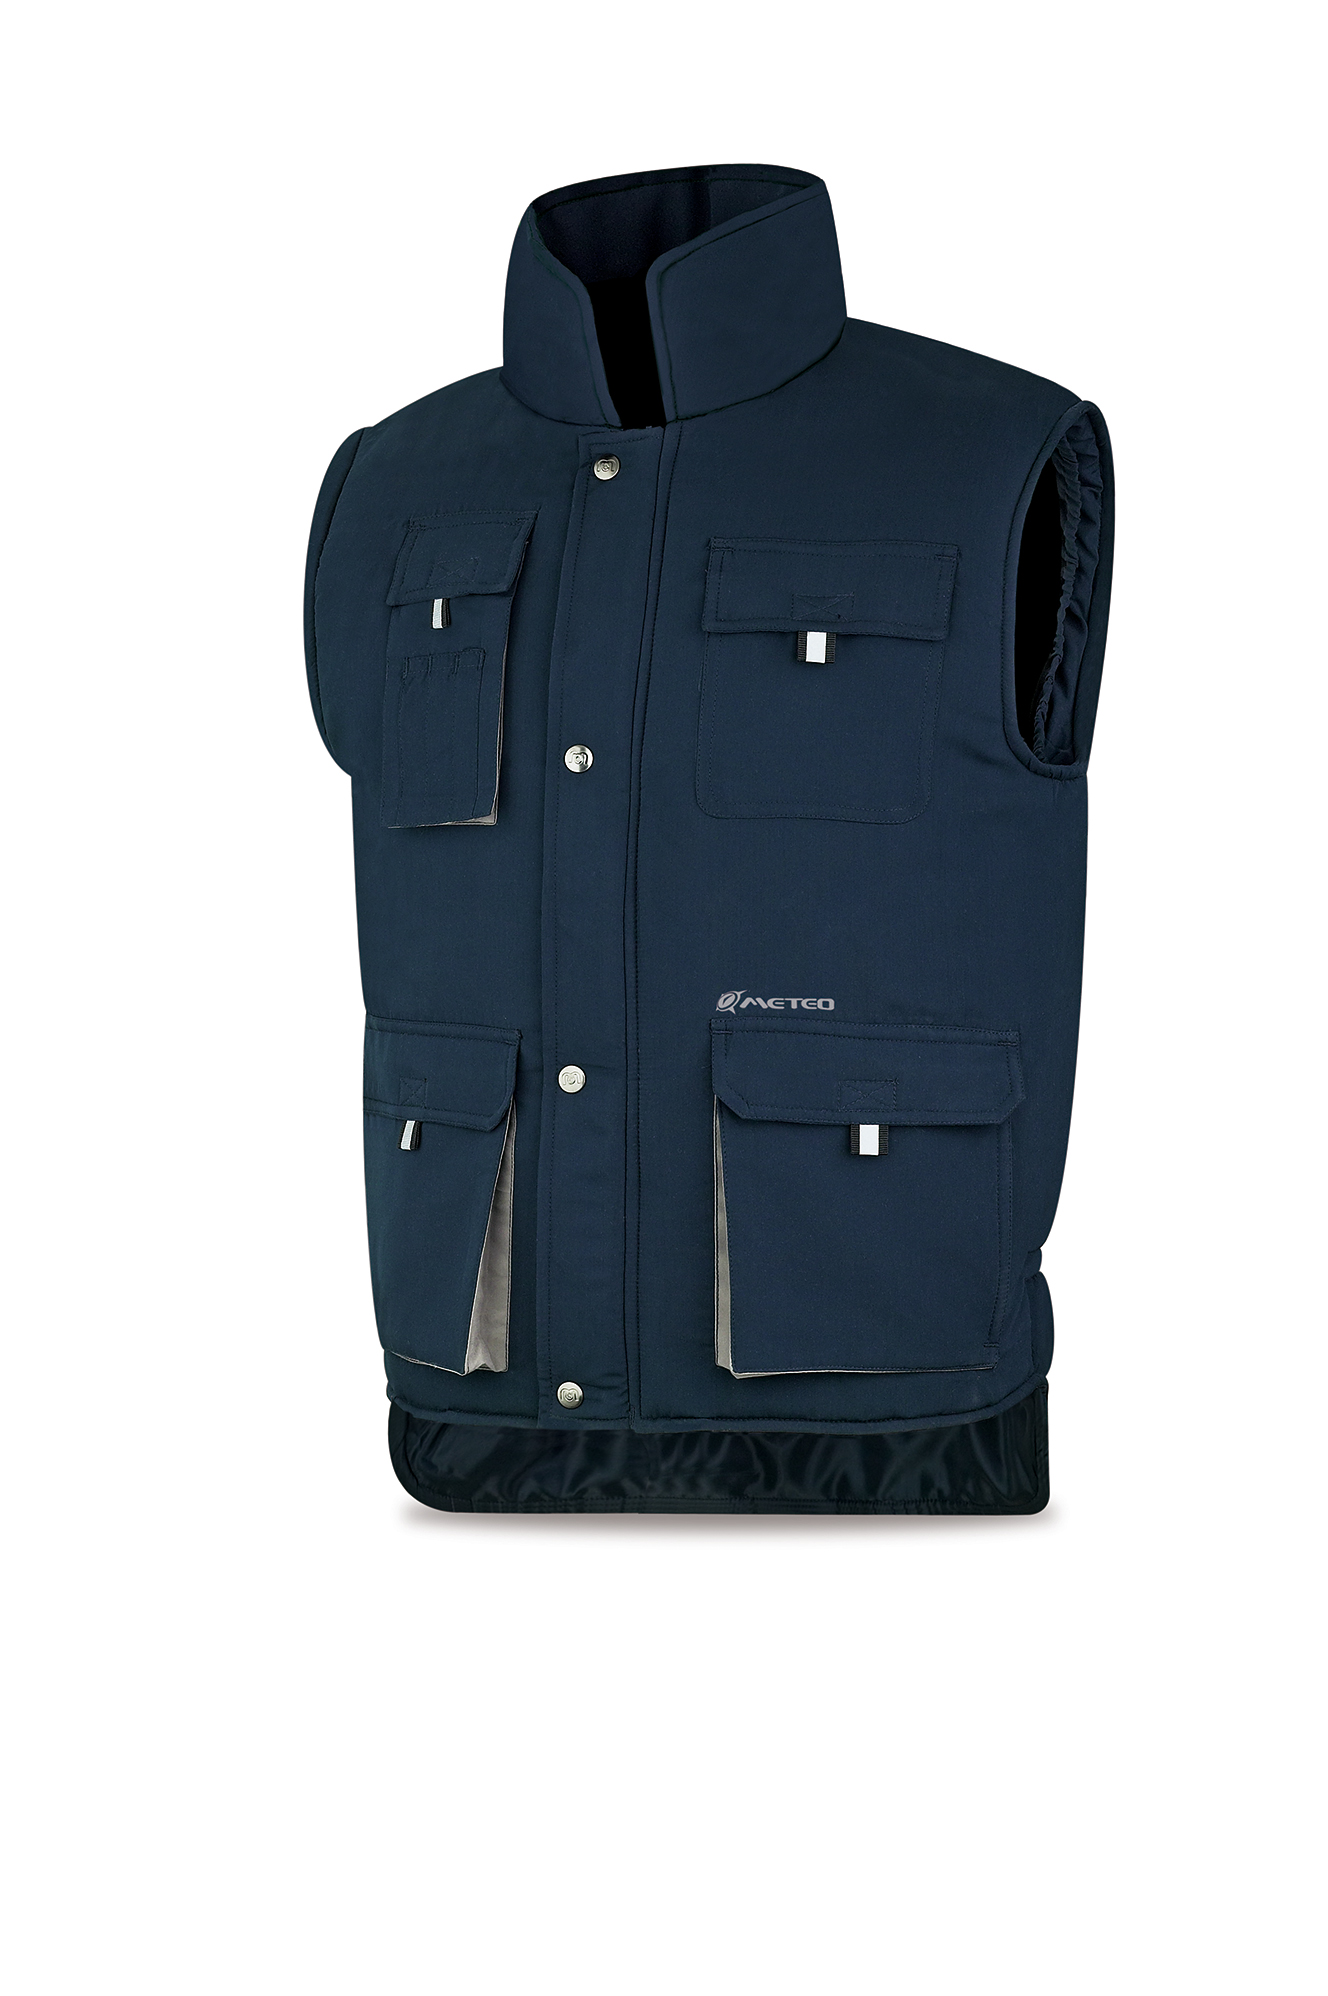 288-VMRA Coats and Rain Gear  Jackets Multi-pocket Sleeveless jacket model HEIMDALL.